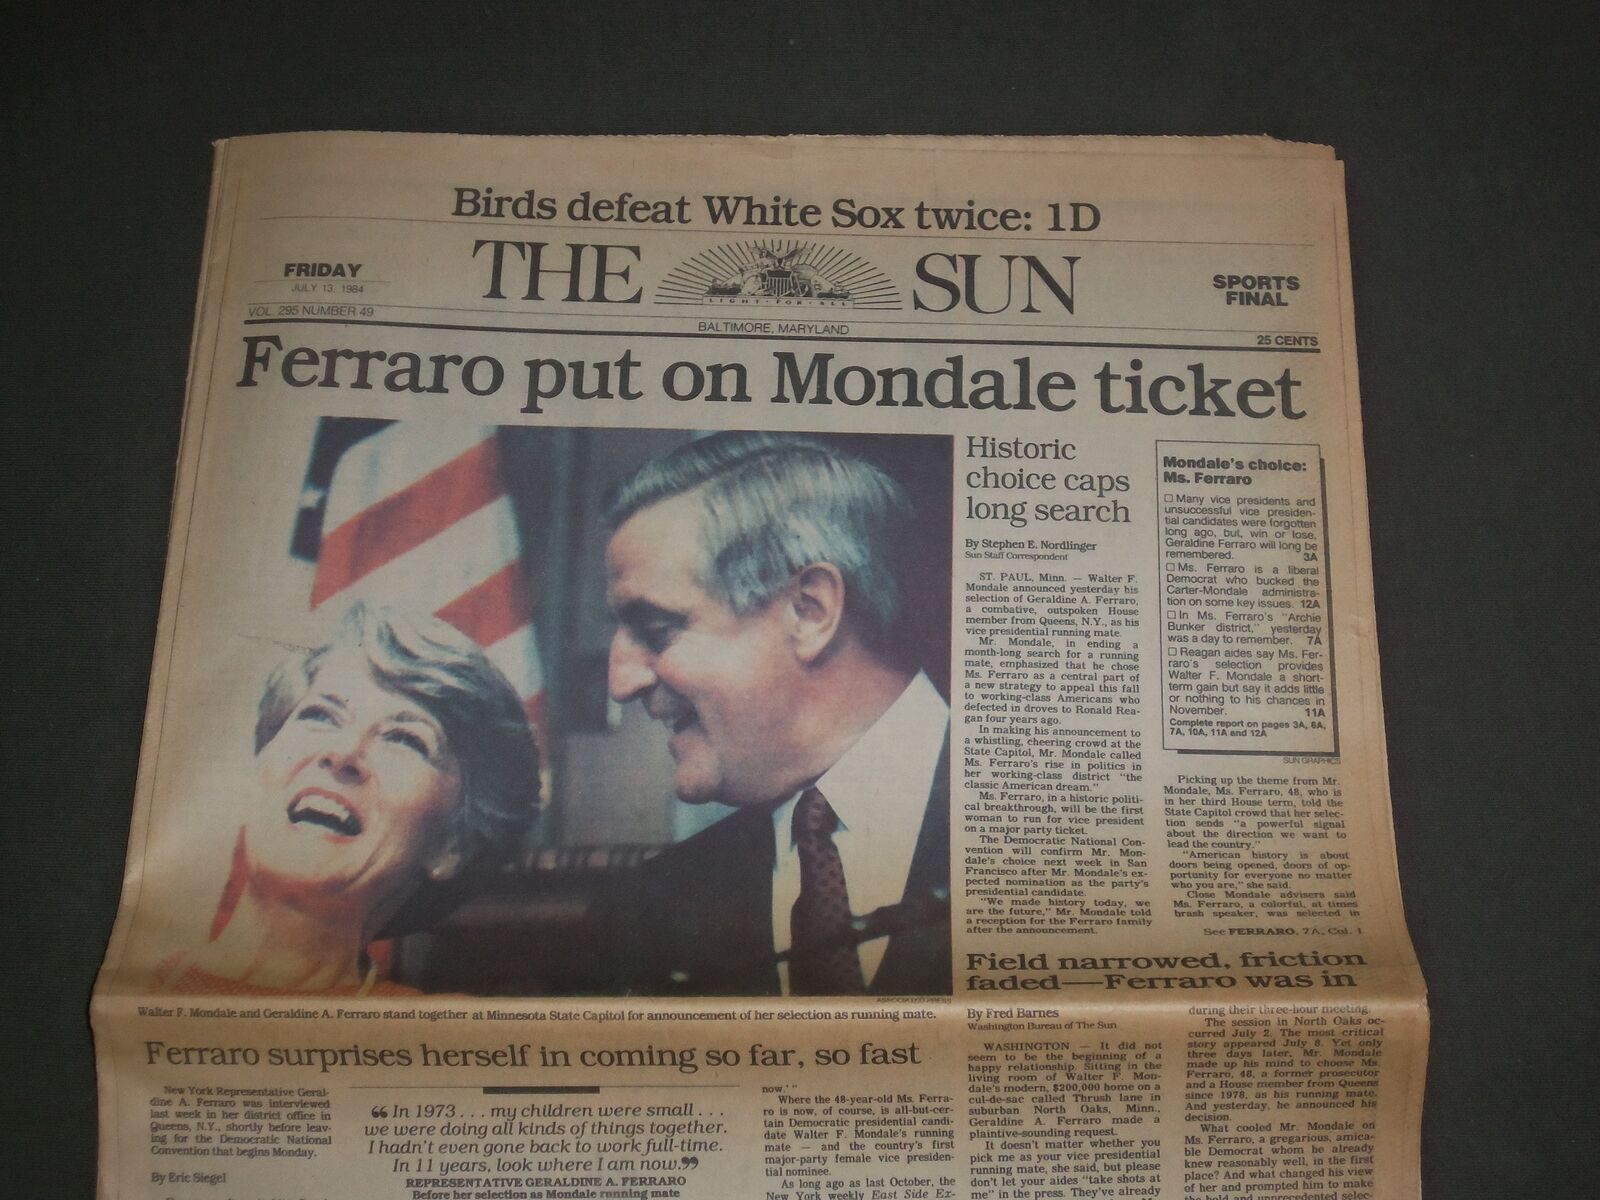 1984 JULY 13 THE BALTIMORE SUN - GERALDINE FERRARO FOR VP WITH MONDALE - NP 2957